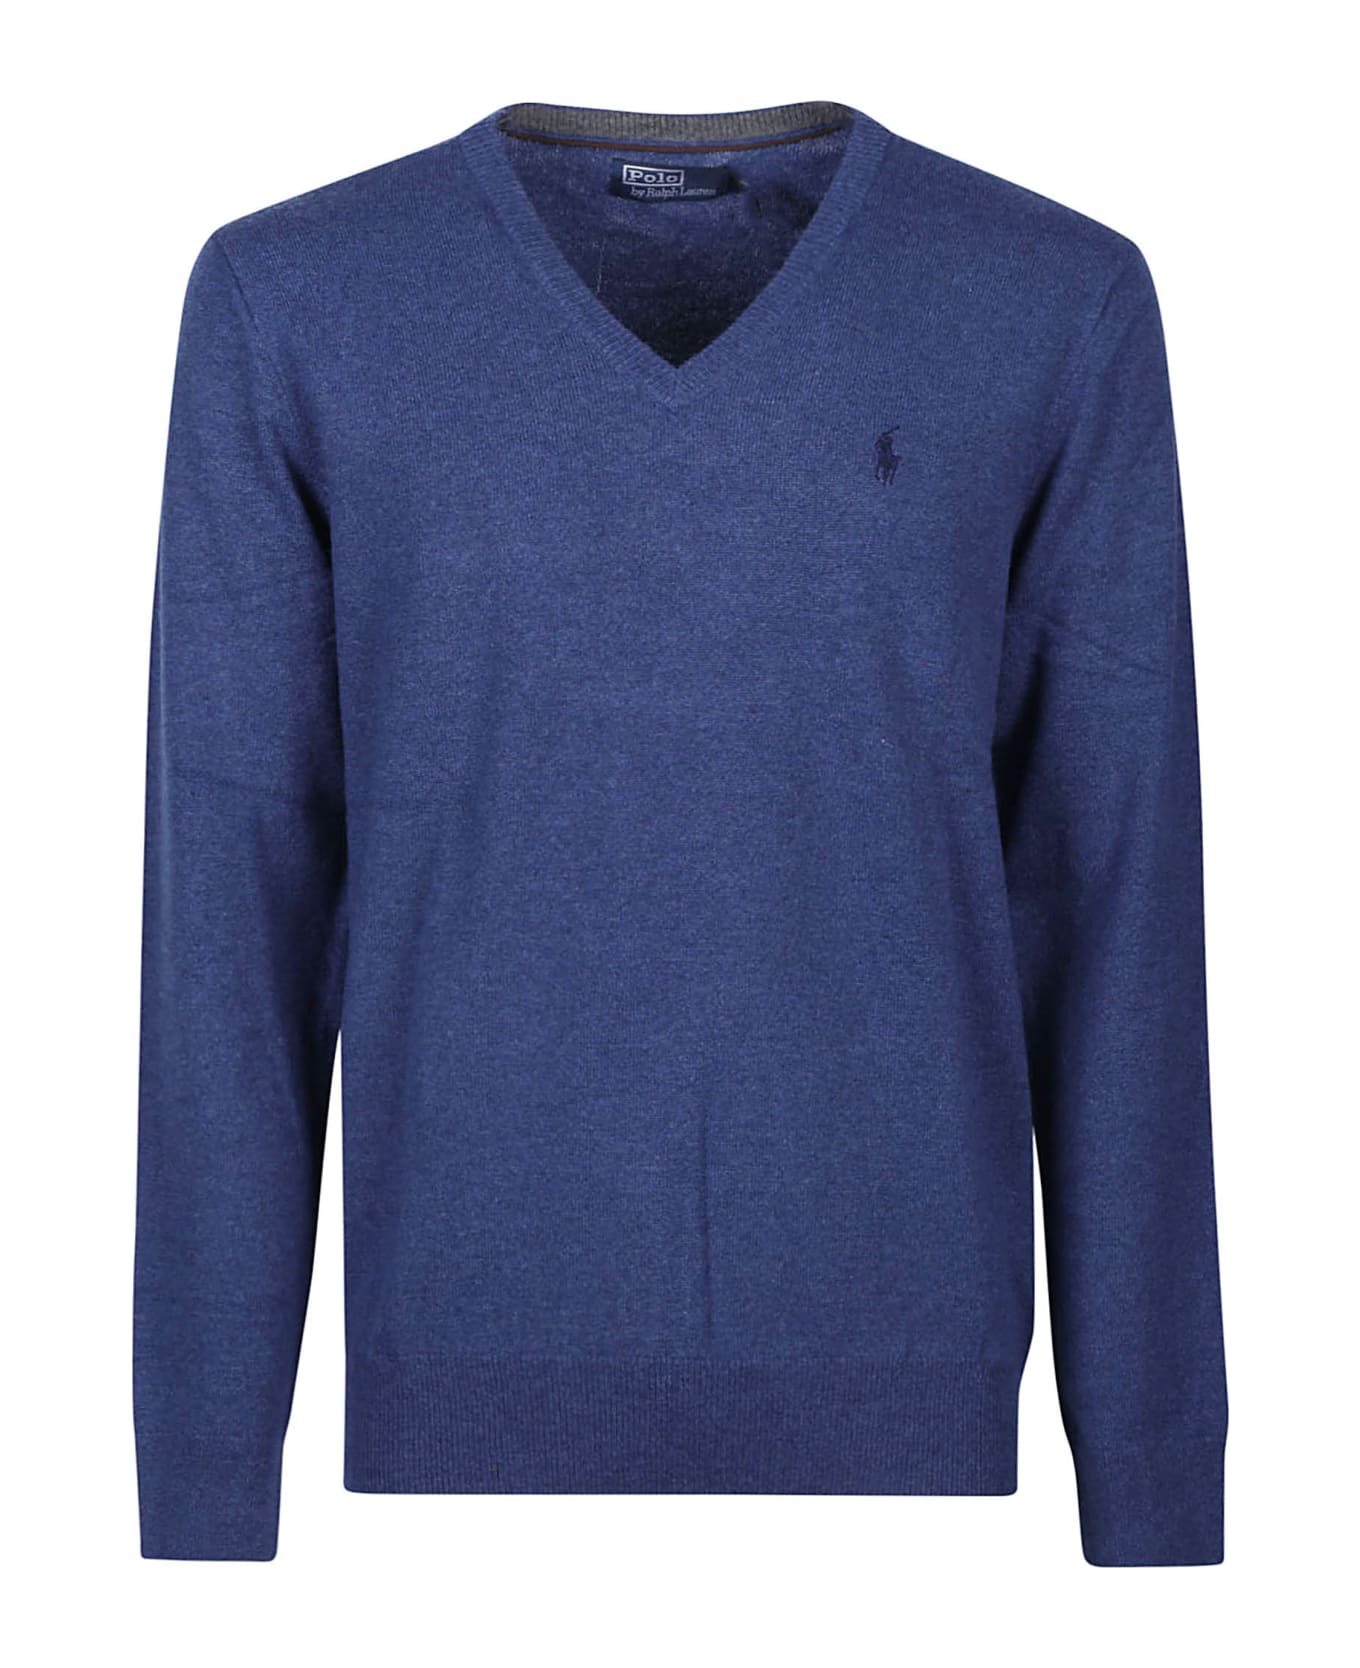 Polo Ralph Lauren Long Sleeve Sweater - Blue